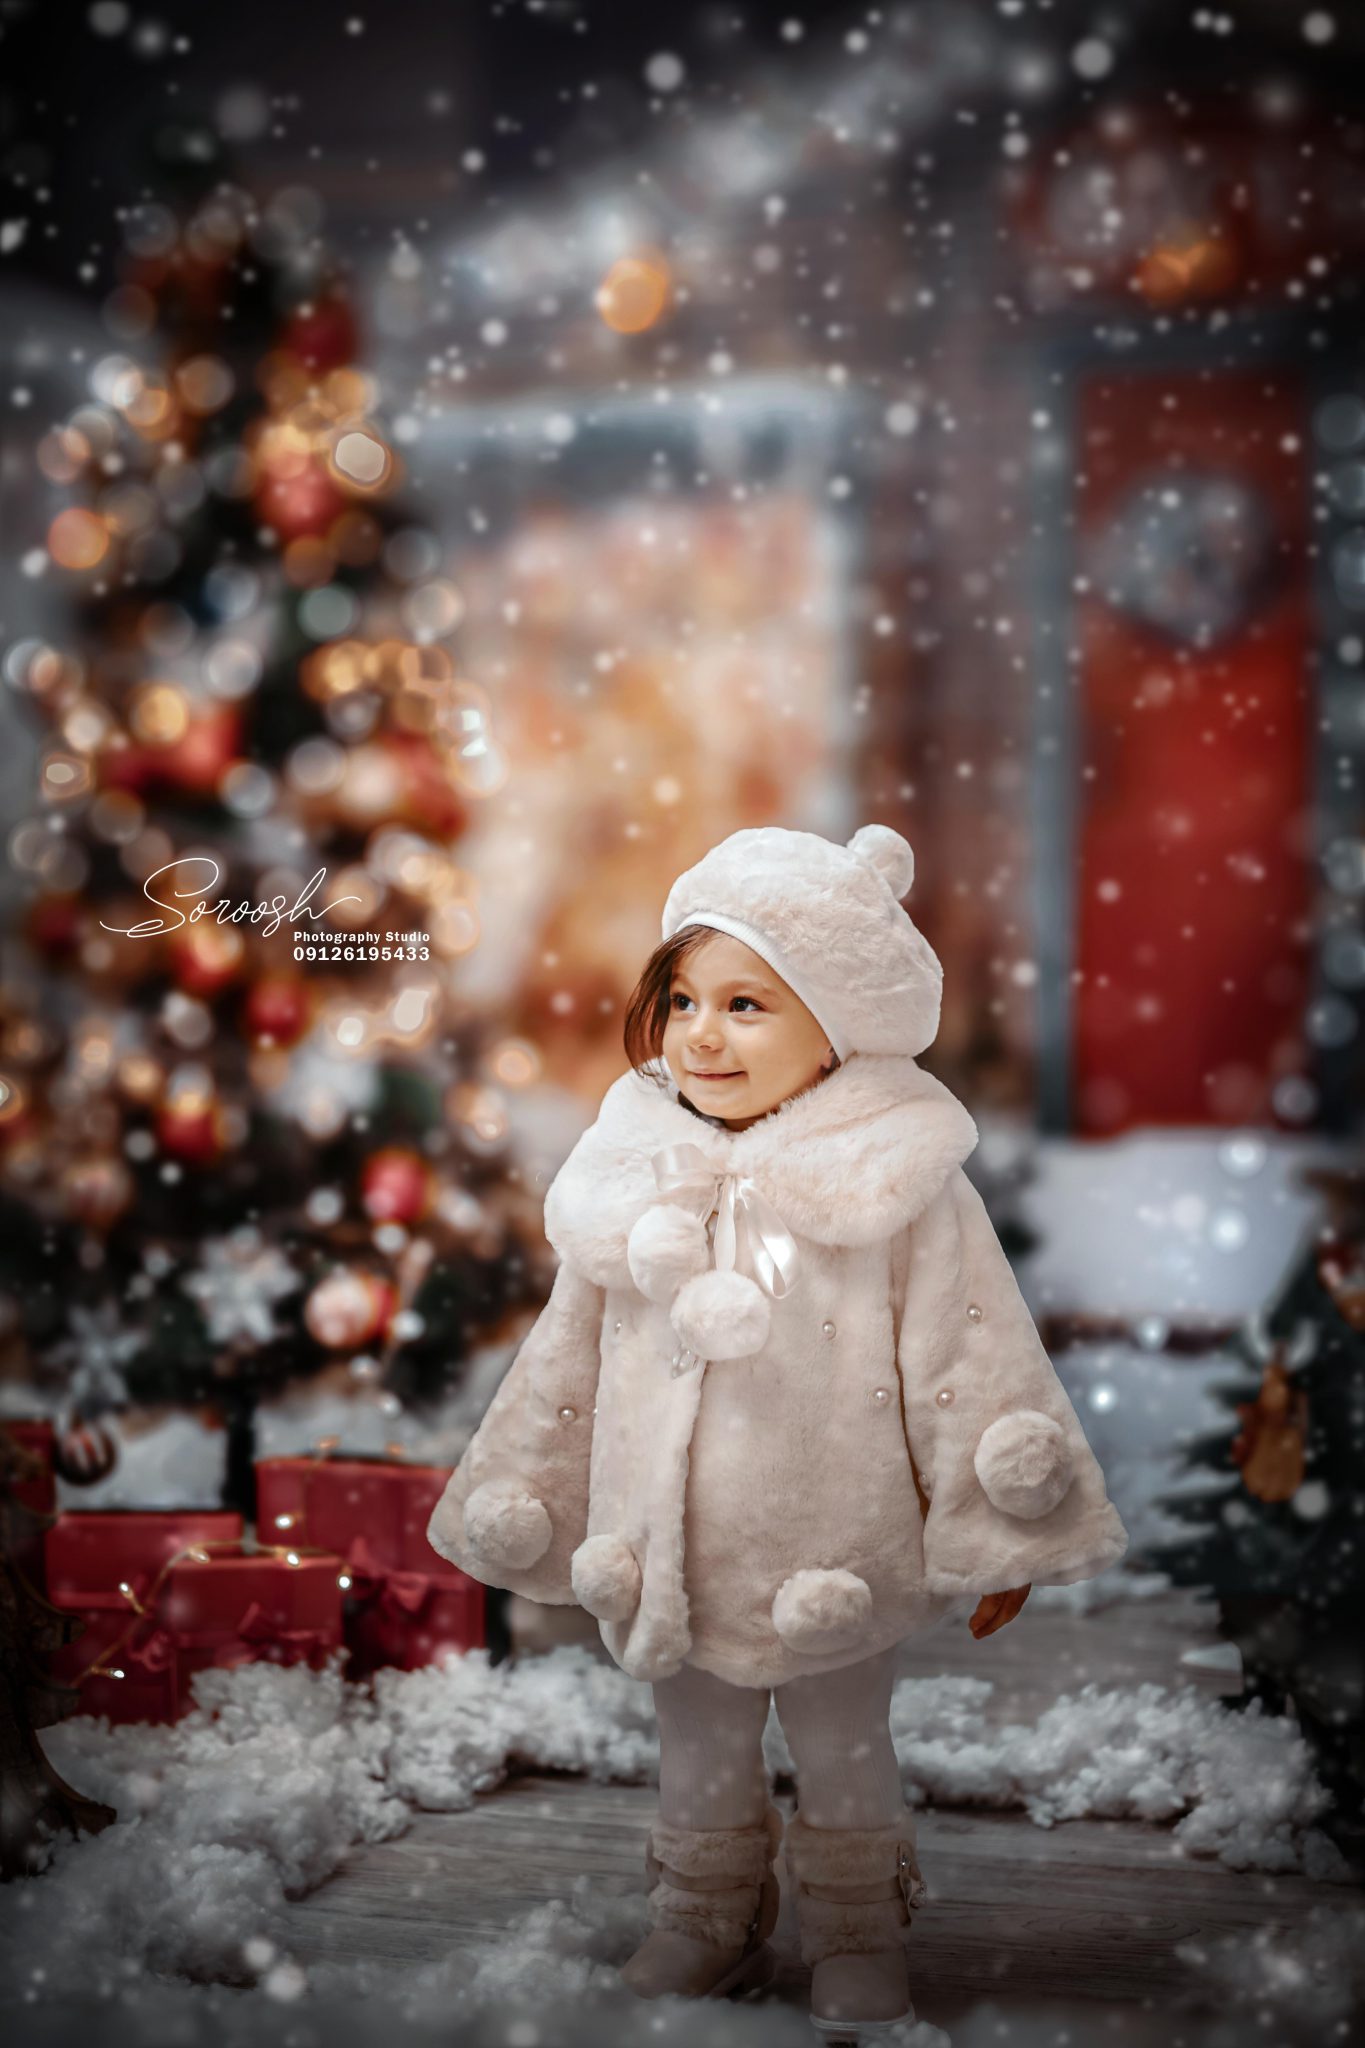 عکس کودک با تم روز کریسمس